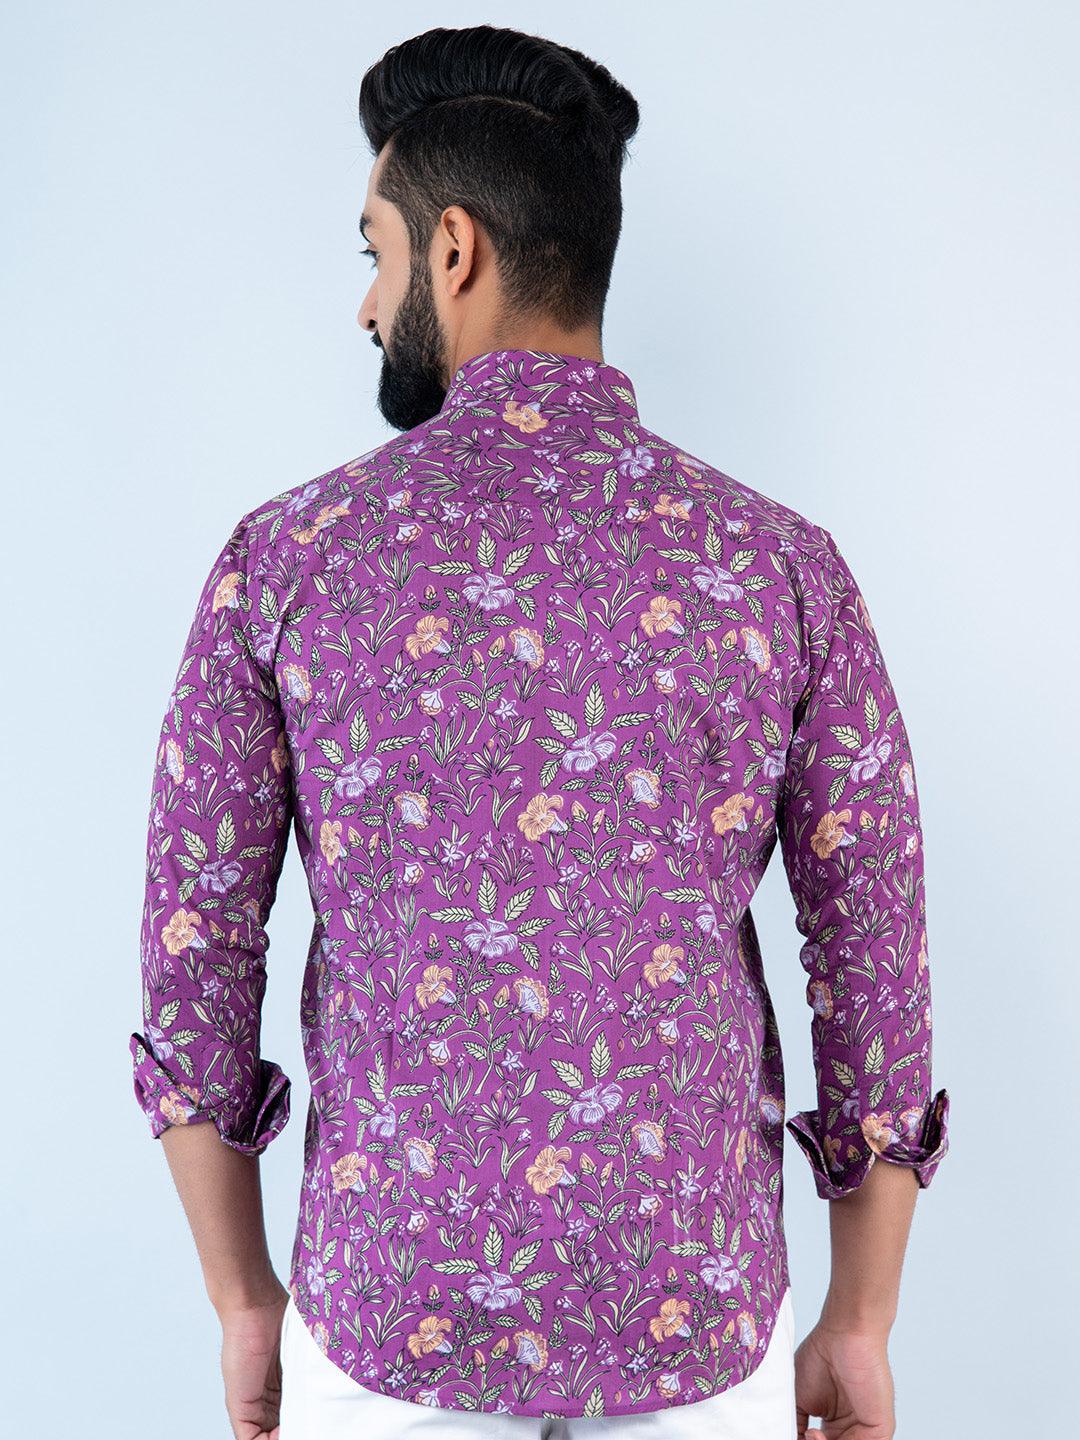 floral shirt for men